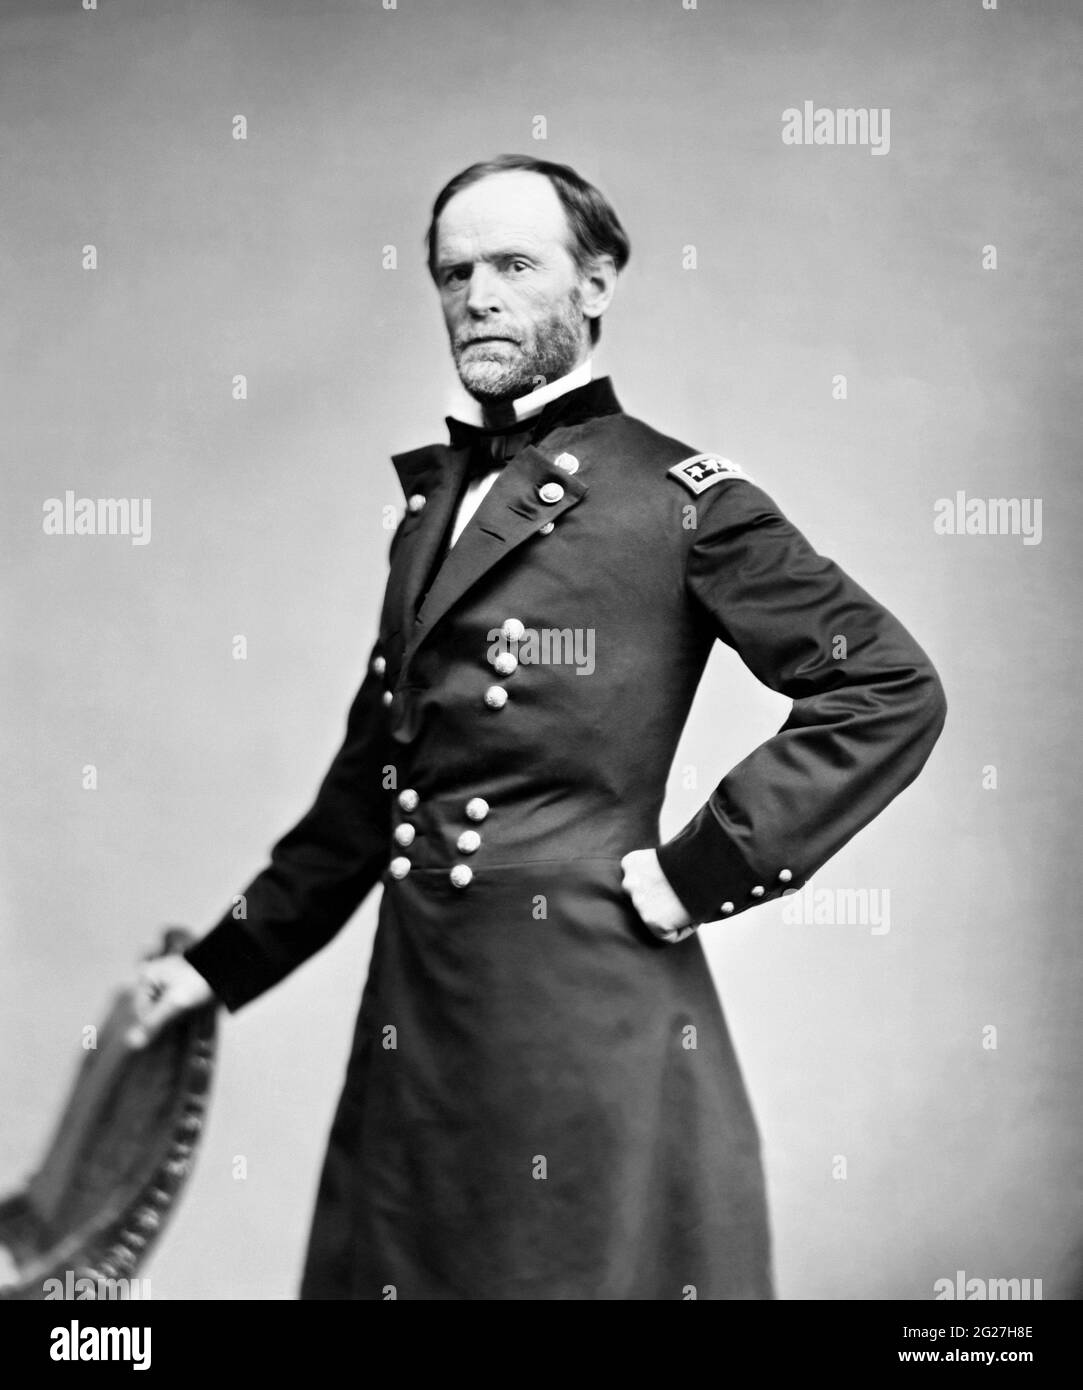 Portrait du général William Tecumseh Sherman, soldat américain de l'Armée de l'Union. Banque D'Images